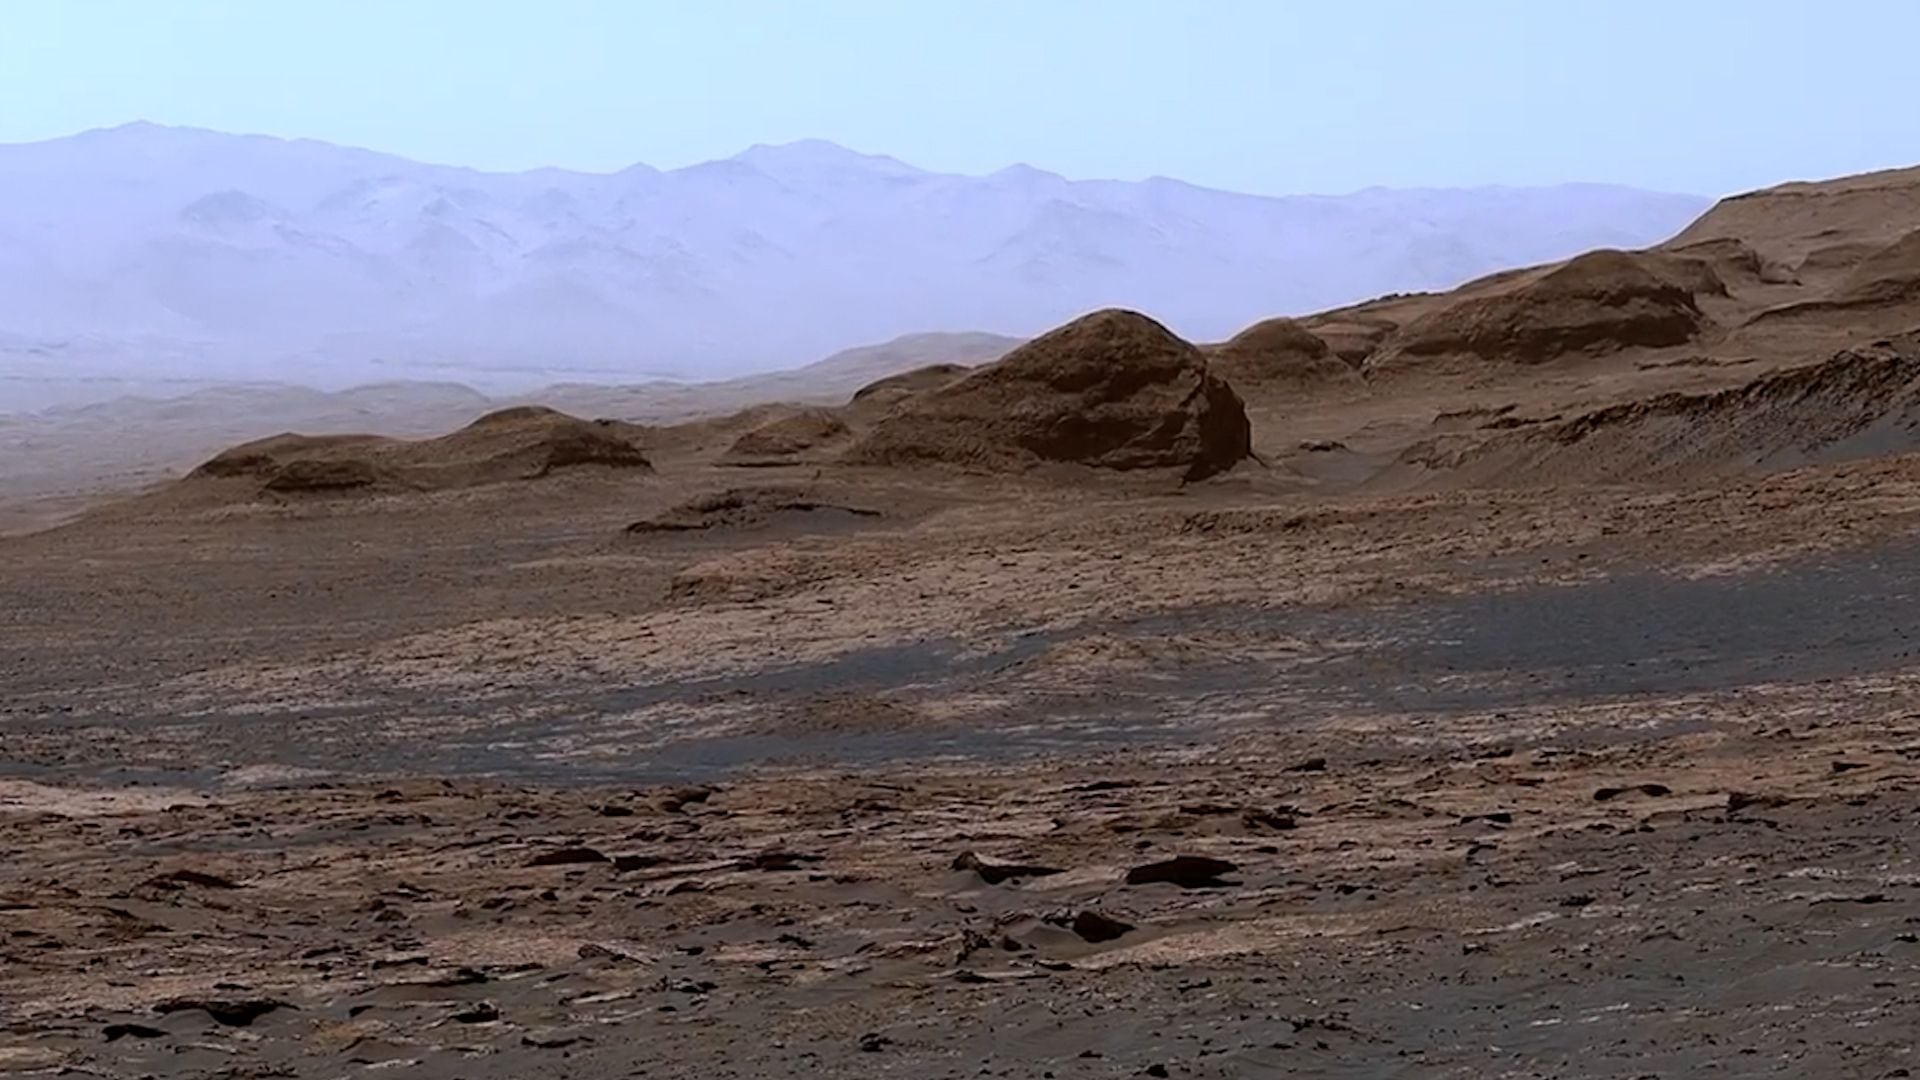 Marte, habría sufrido un enfriamiento global hasta 40 grados bajo cero, creando condiciones menos habitables en la superficie